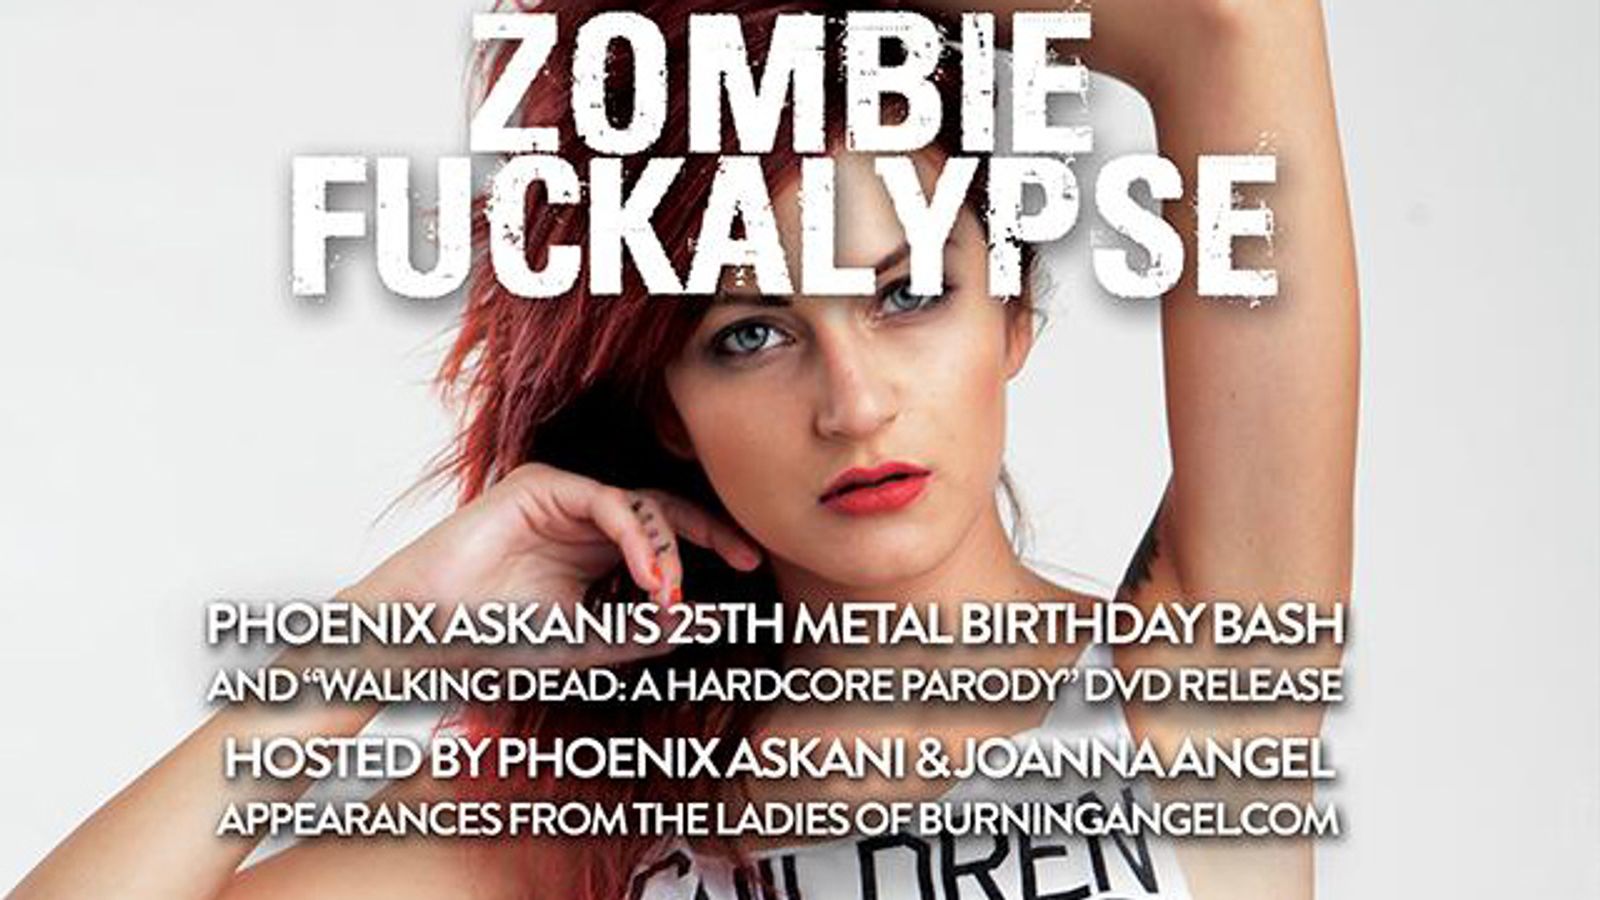 BurningAngel Presents 'Zombie Fuckalypse' Party Aug. 7